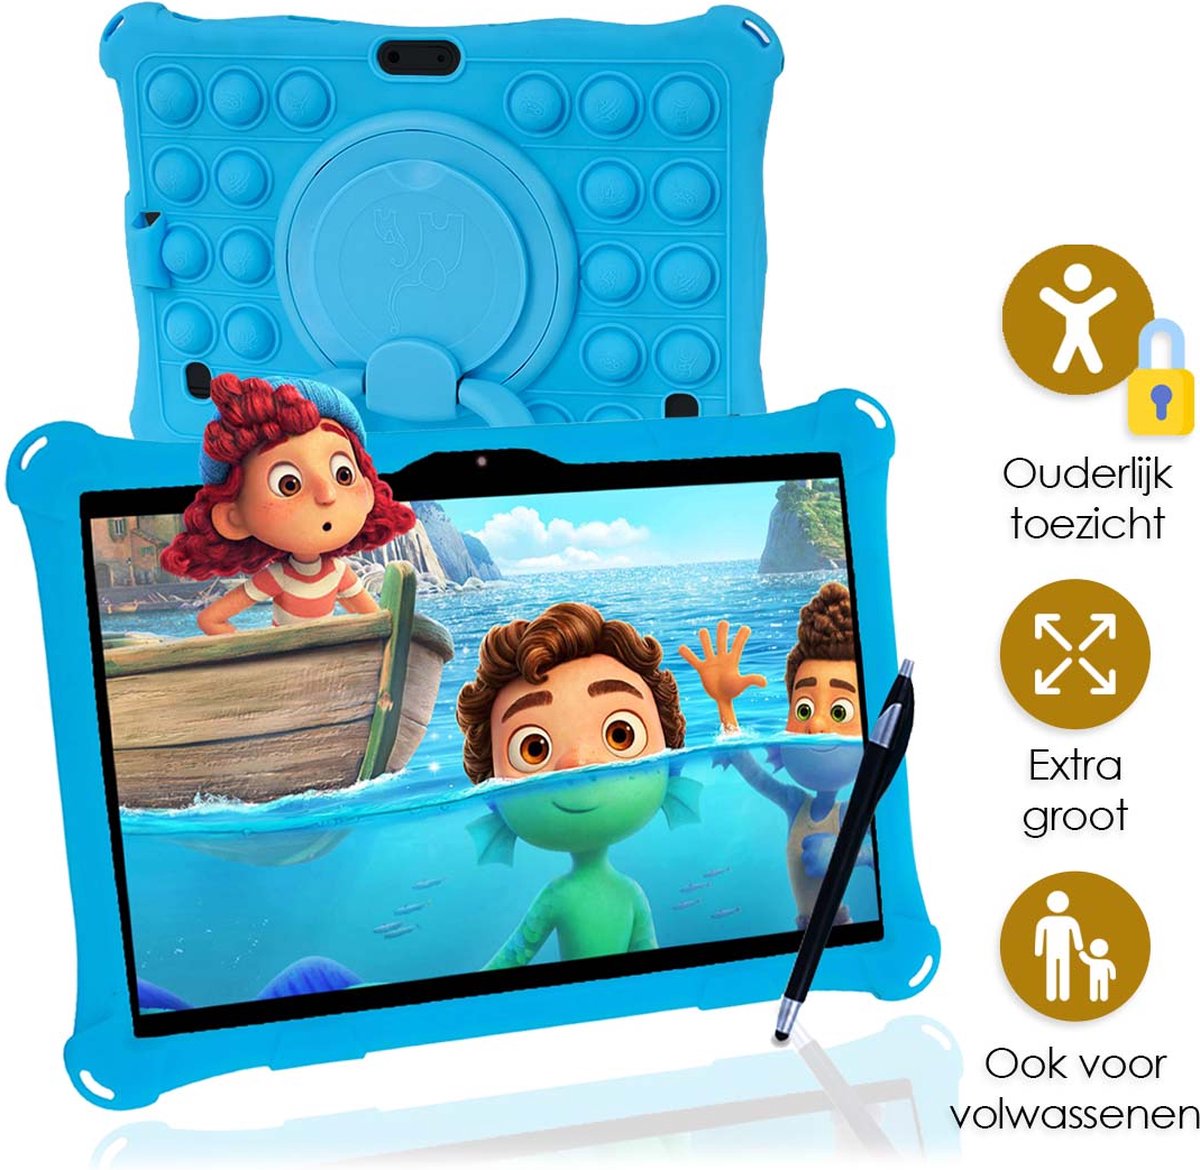 AngelTech Kindertablet XL PRO I – 100%Kidsproof– Extra Groot – Ook Voor Volwassen Gebruik – 10 inch - Ouderlijk toezicht – 360­° Verstelbare Fidgy beschermhoes - 32GB – Blauw of Roze